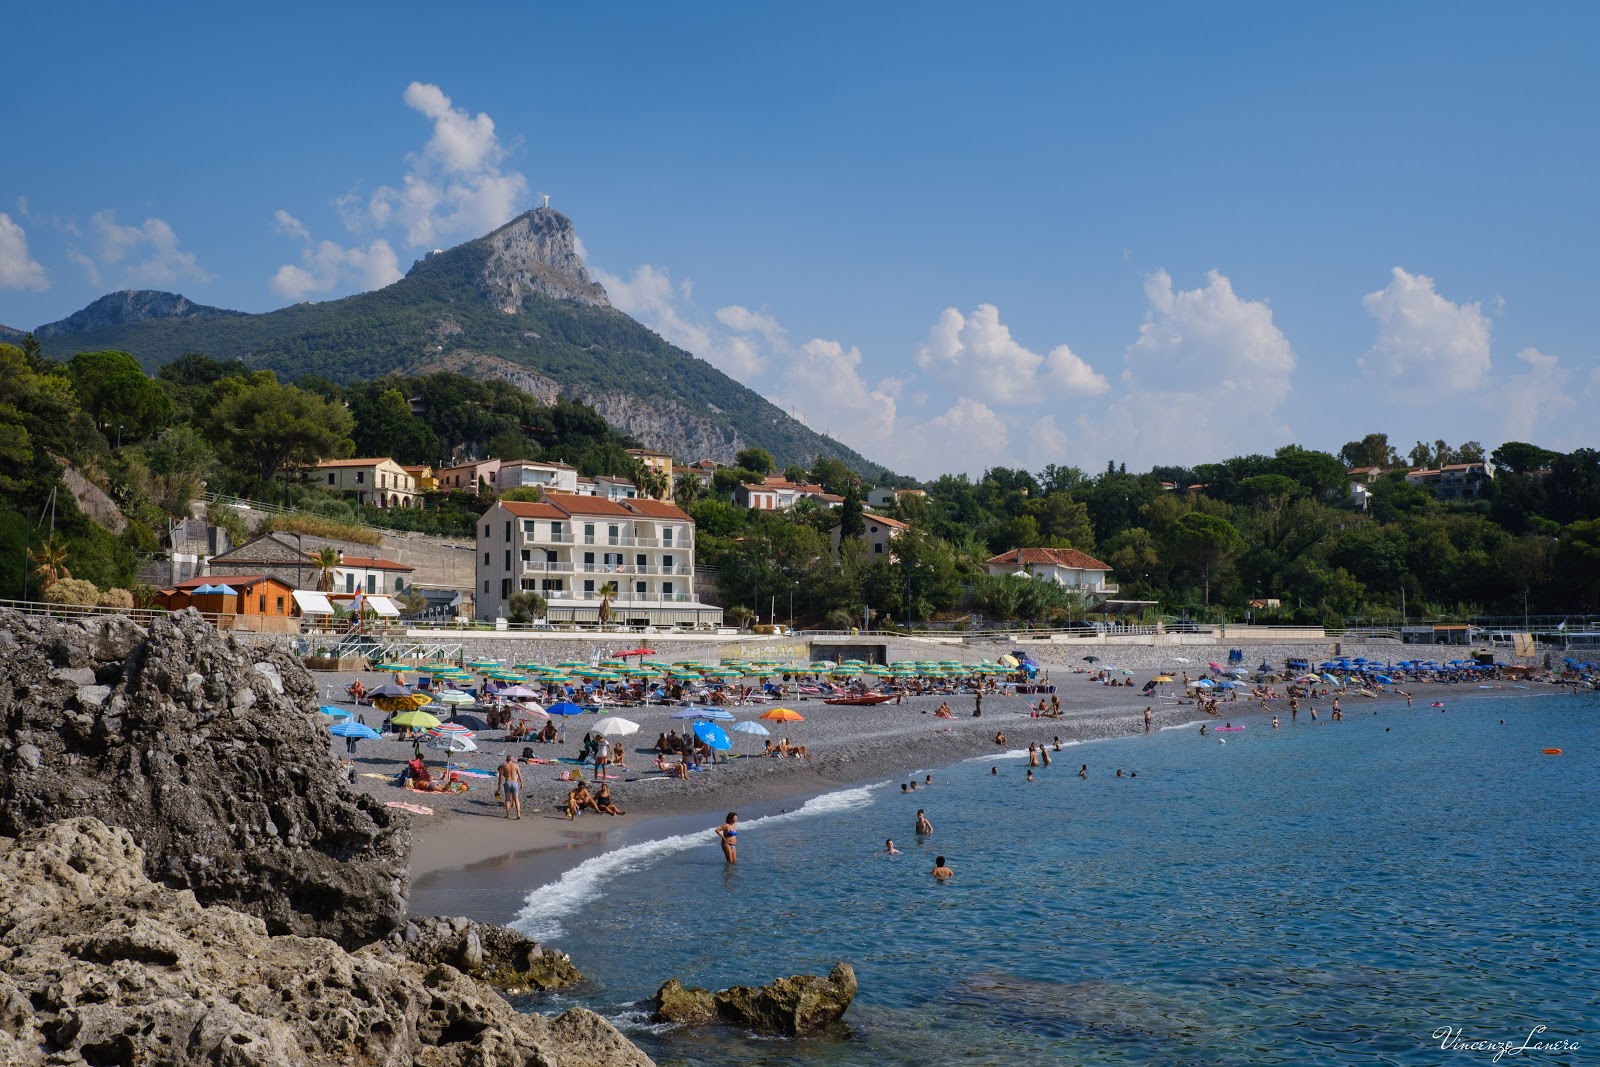 Foto von Spiaggia di Fiumicello - beliebter Ort unter Entspannungskennern